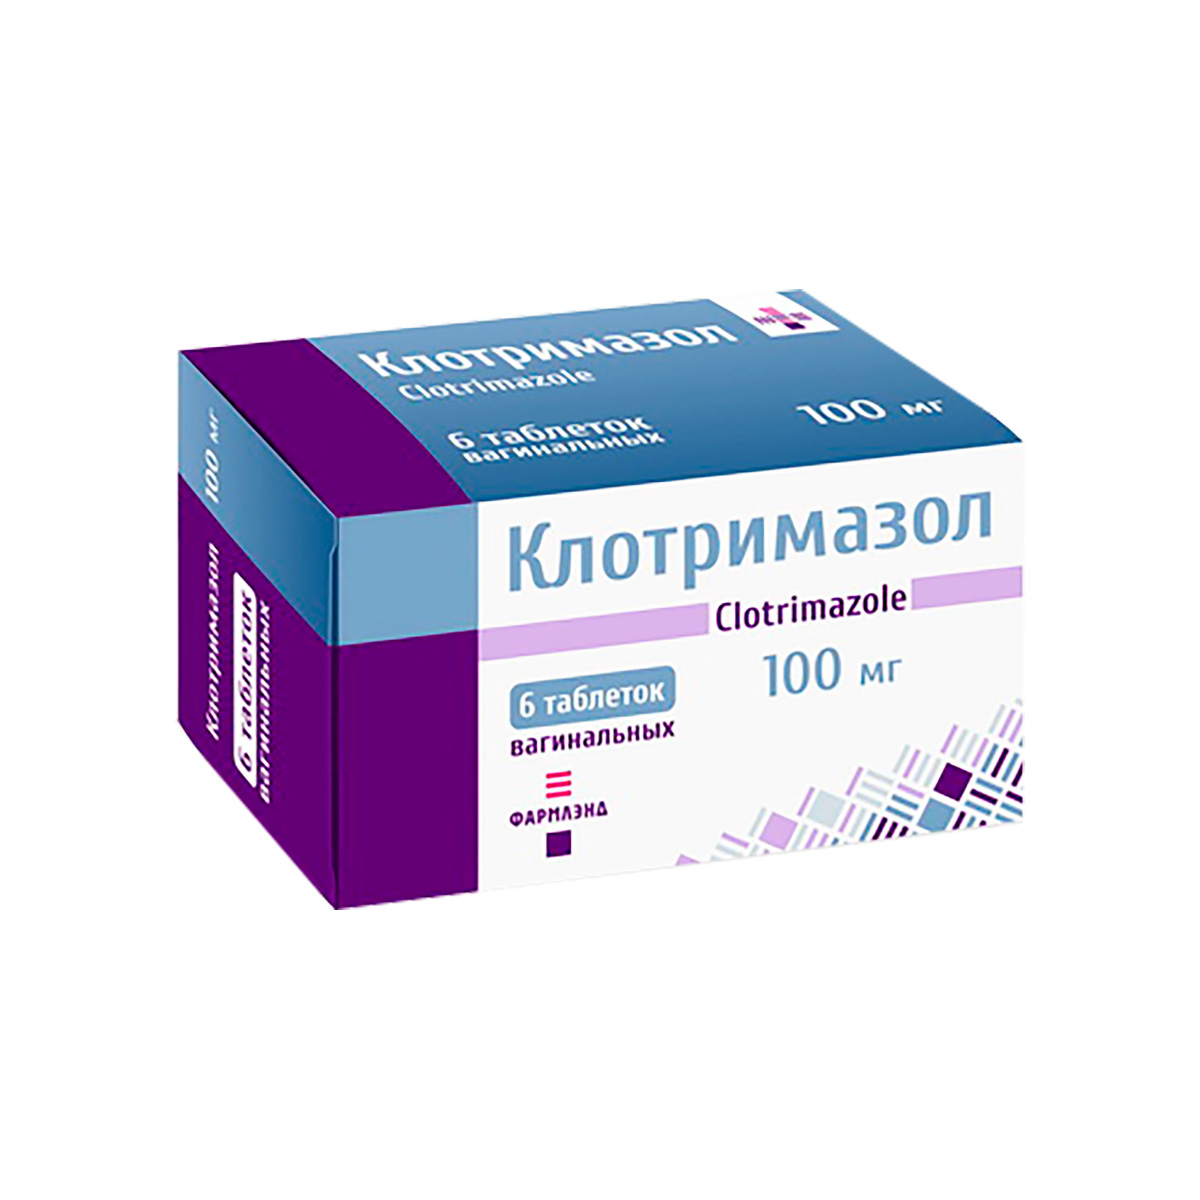 Клотримазол 100 мг таблетки вагинальные 6 шт